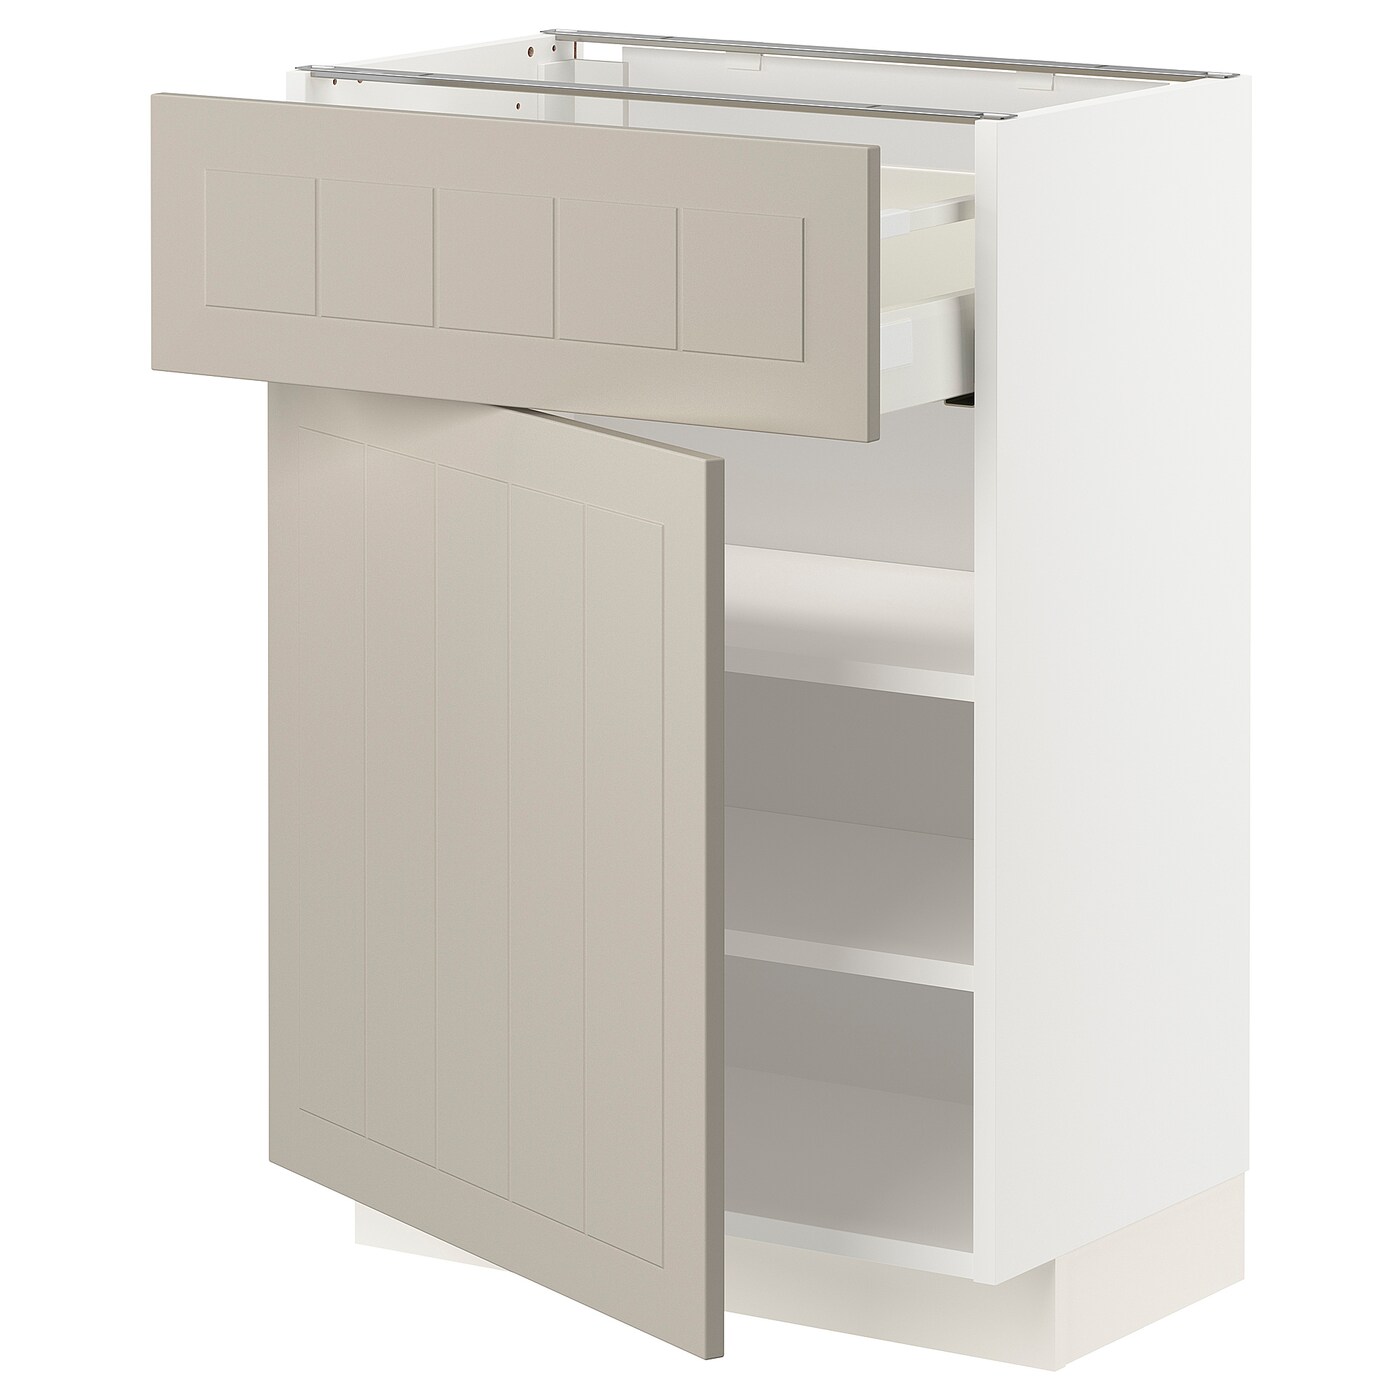 Напольный шкаф - IKEA METOD MAXIMERA, 88x39,5x60см, белый/бежевый, МЕТОД МАКСИМЕРА ИКЕА